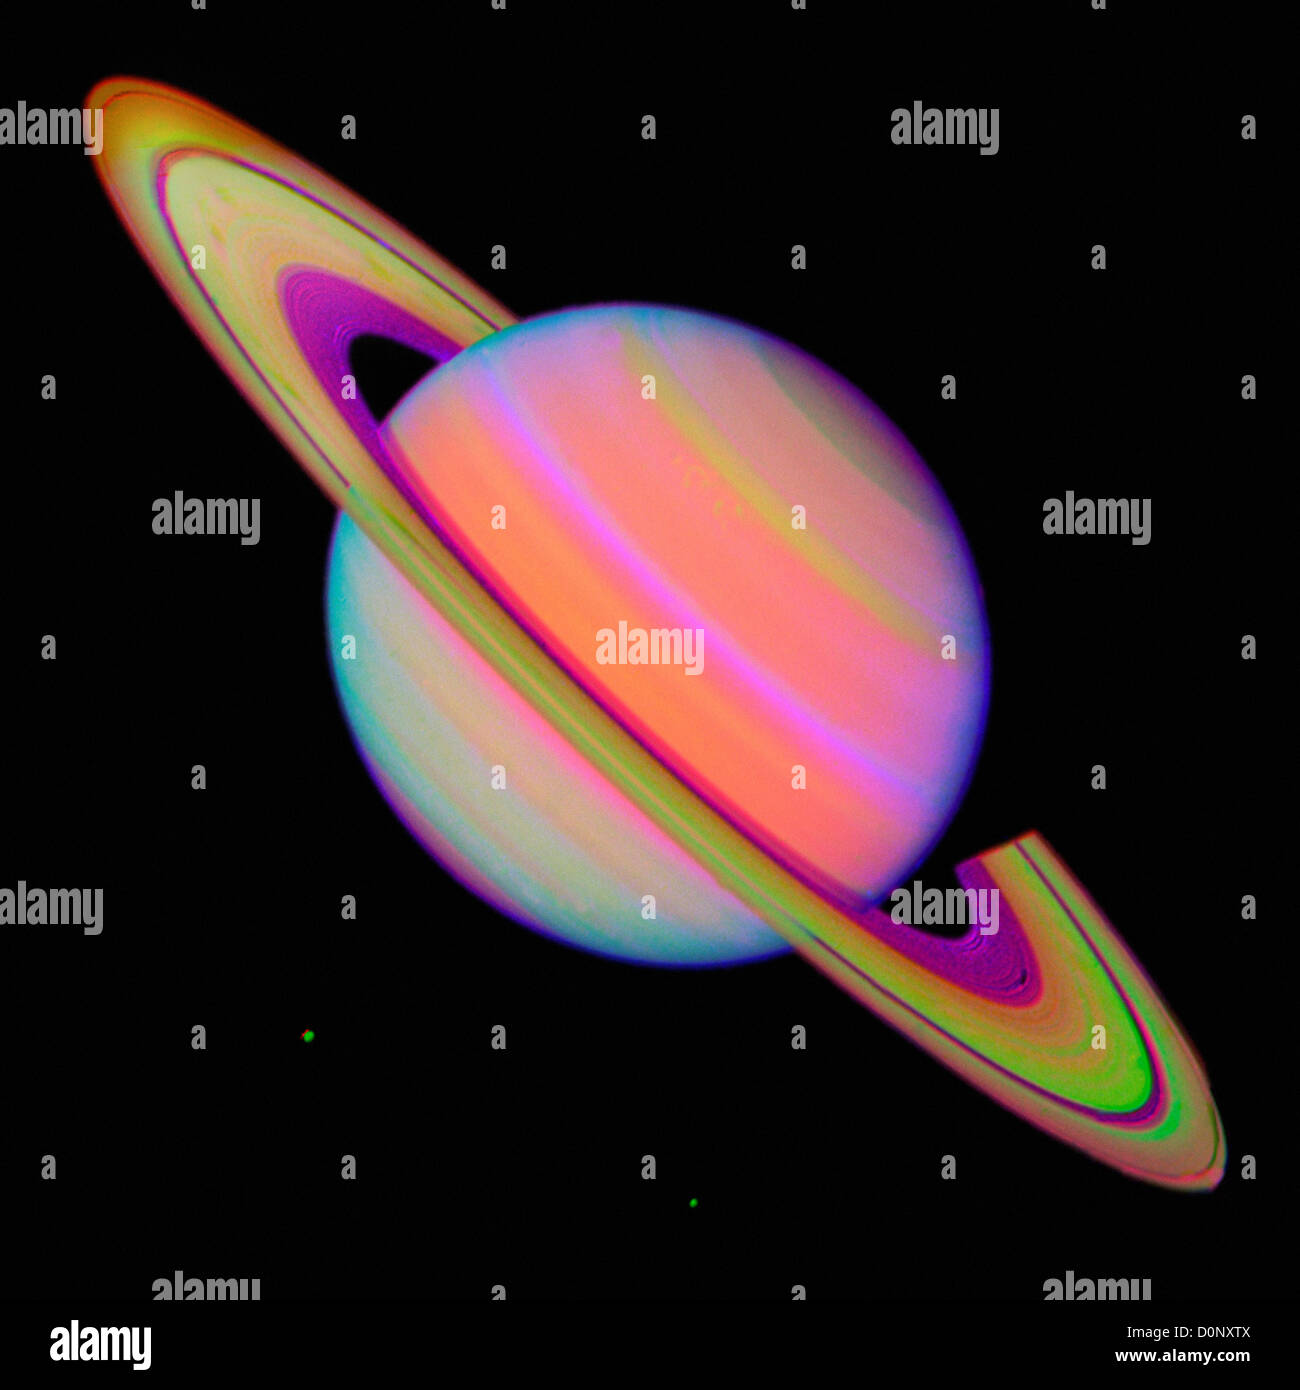 Falschfarbenbild des Saturn von Voyager 2 Stockfoto